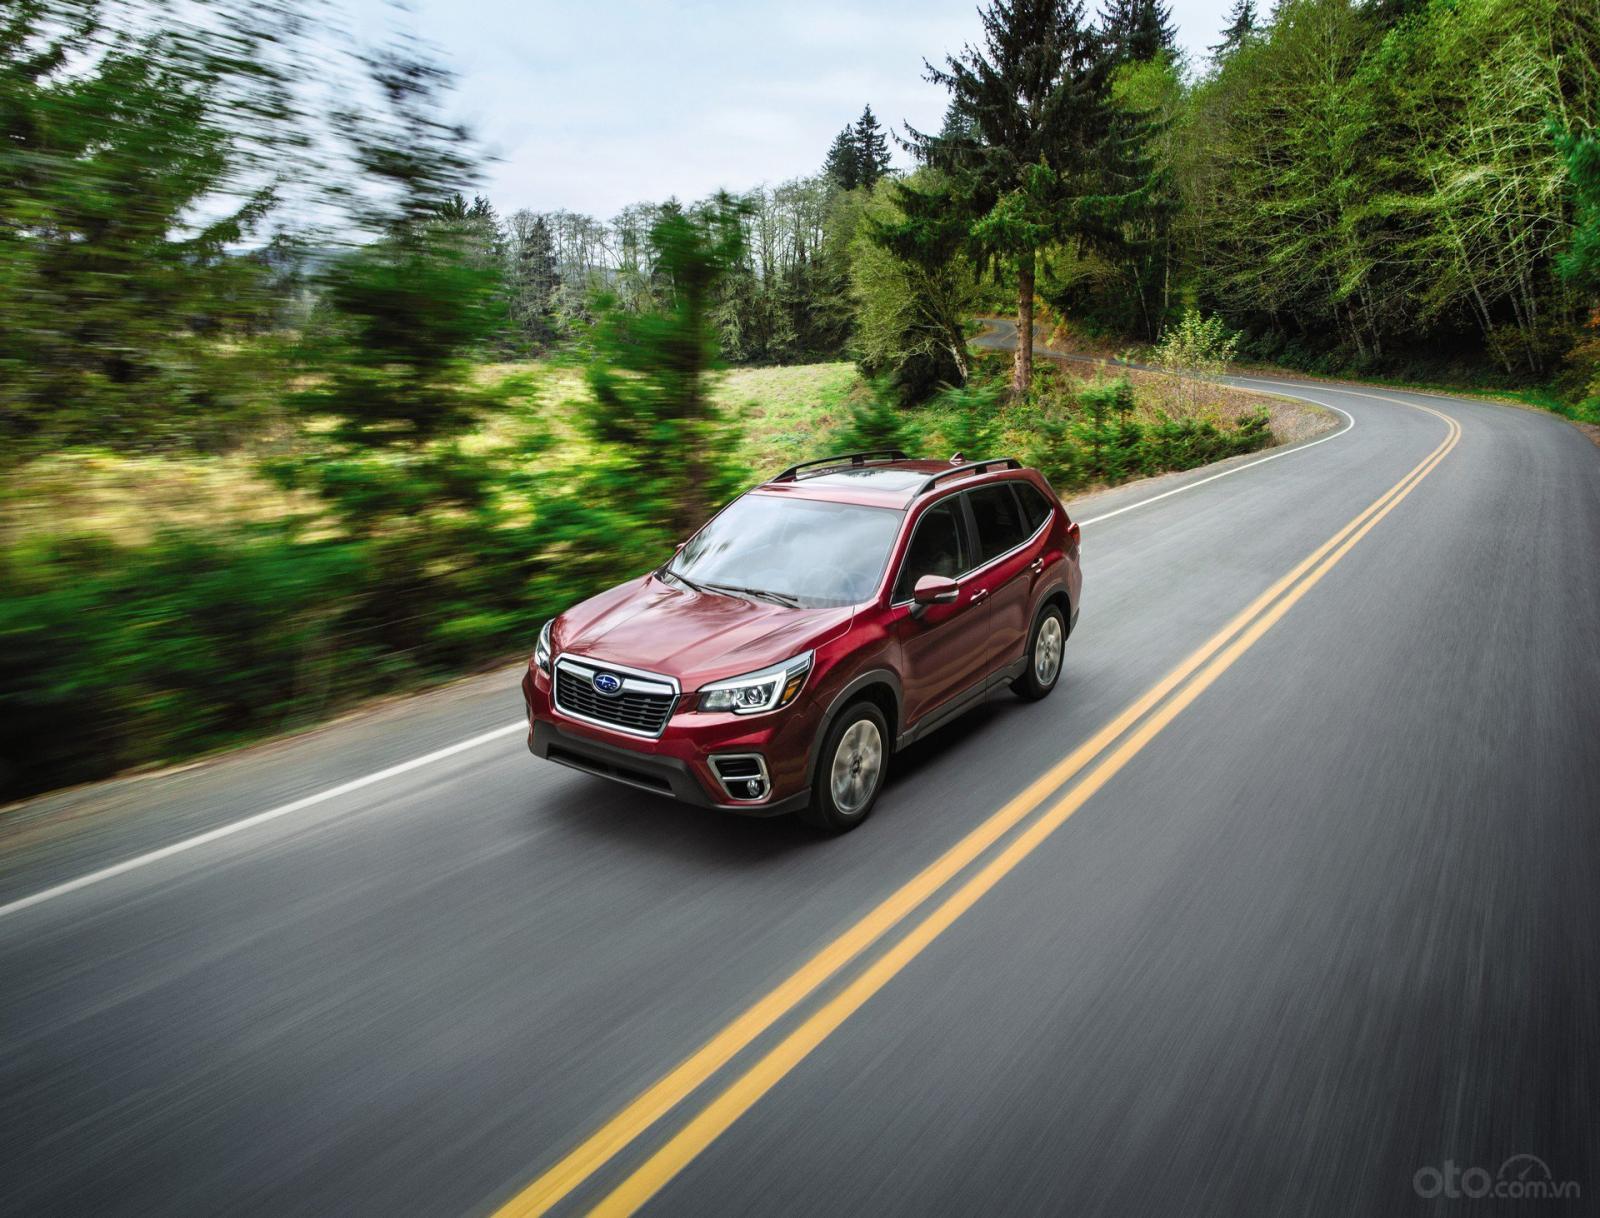 Subaru Forester 2020 cập nhật nhiều công nghệ trợ lái hiện đại.